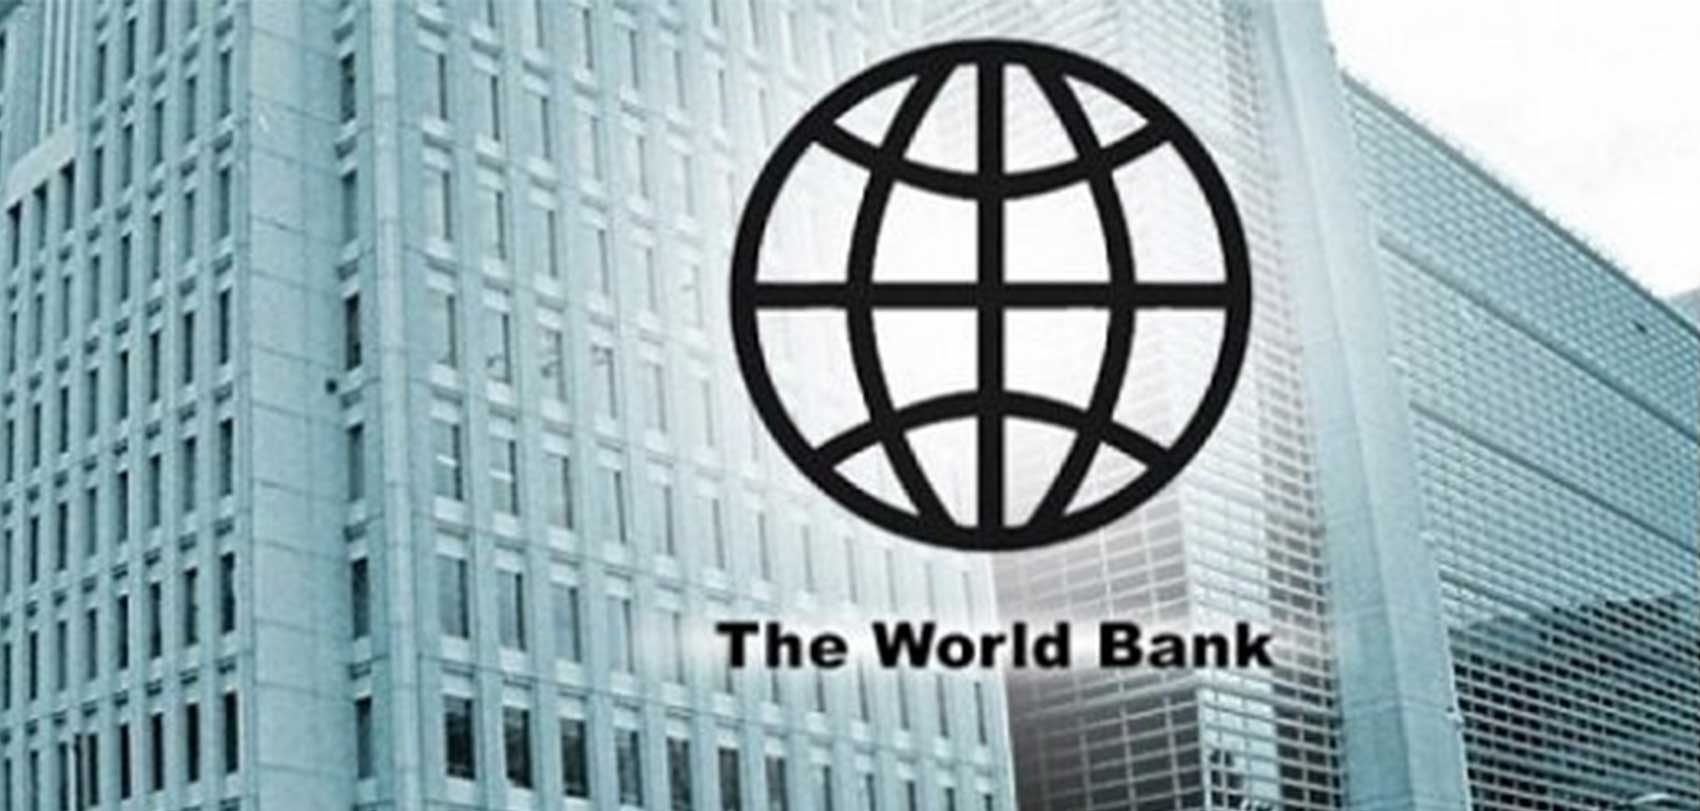 विश्व बैंकले नेपाललाई १० अर्ब रुपैयाँ बराबरको आर्थिक सहयोग गर्ने